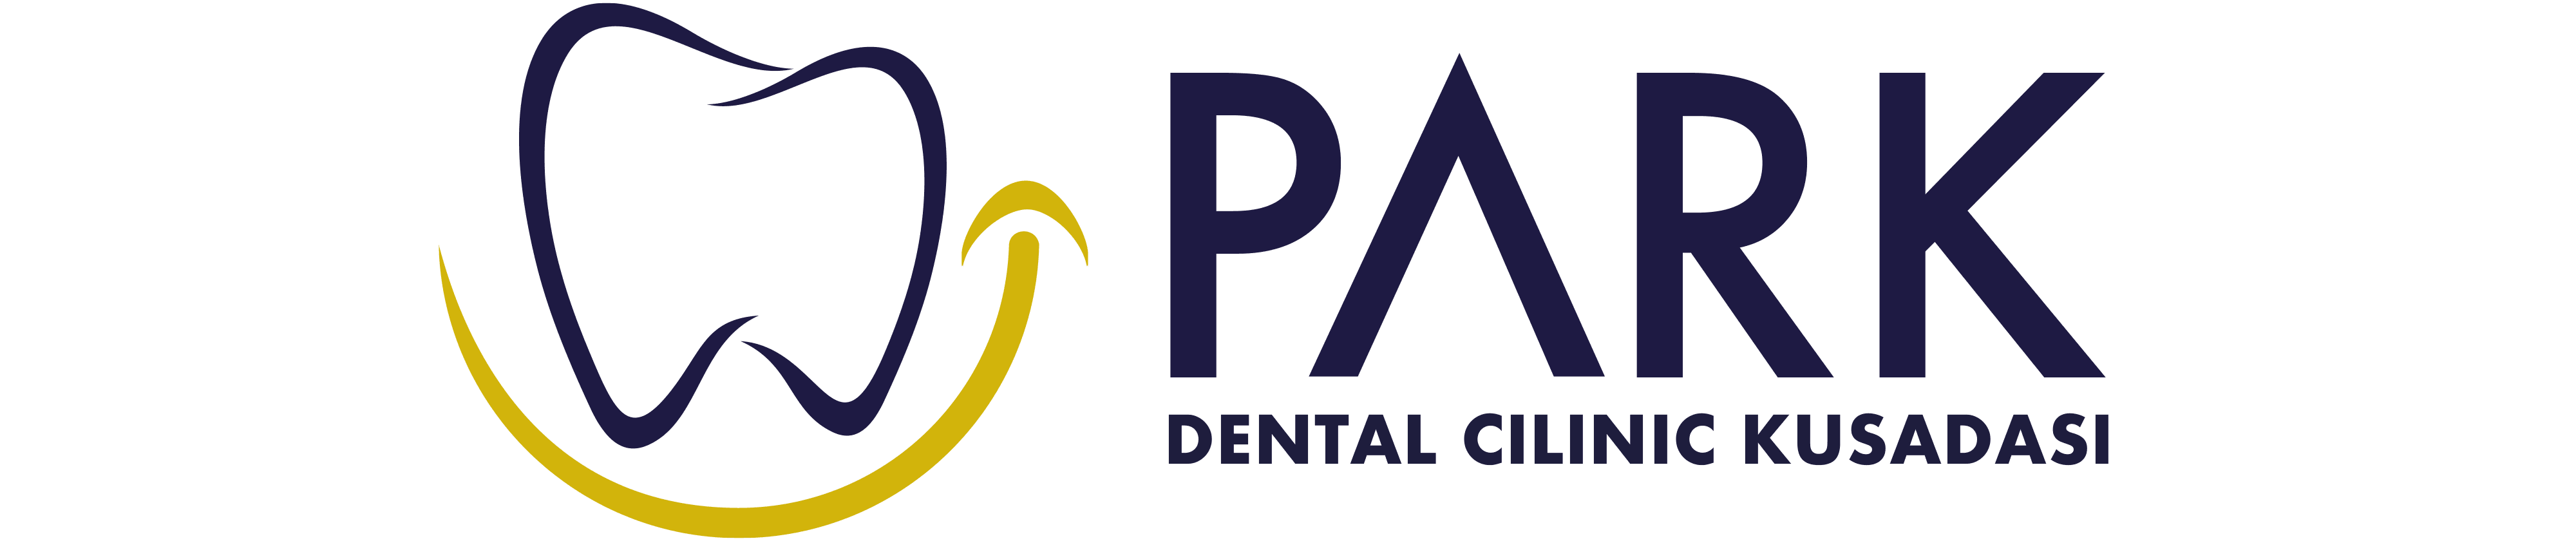 Park Dental Clinic Kusadasi, Dentist clinics in Kusadasi